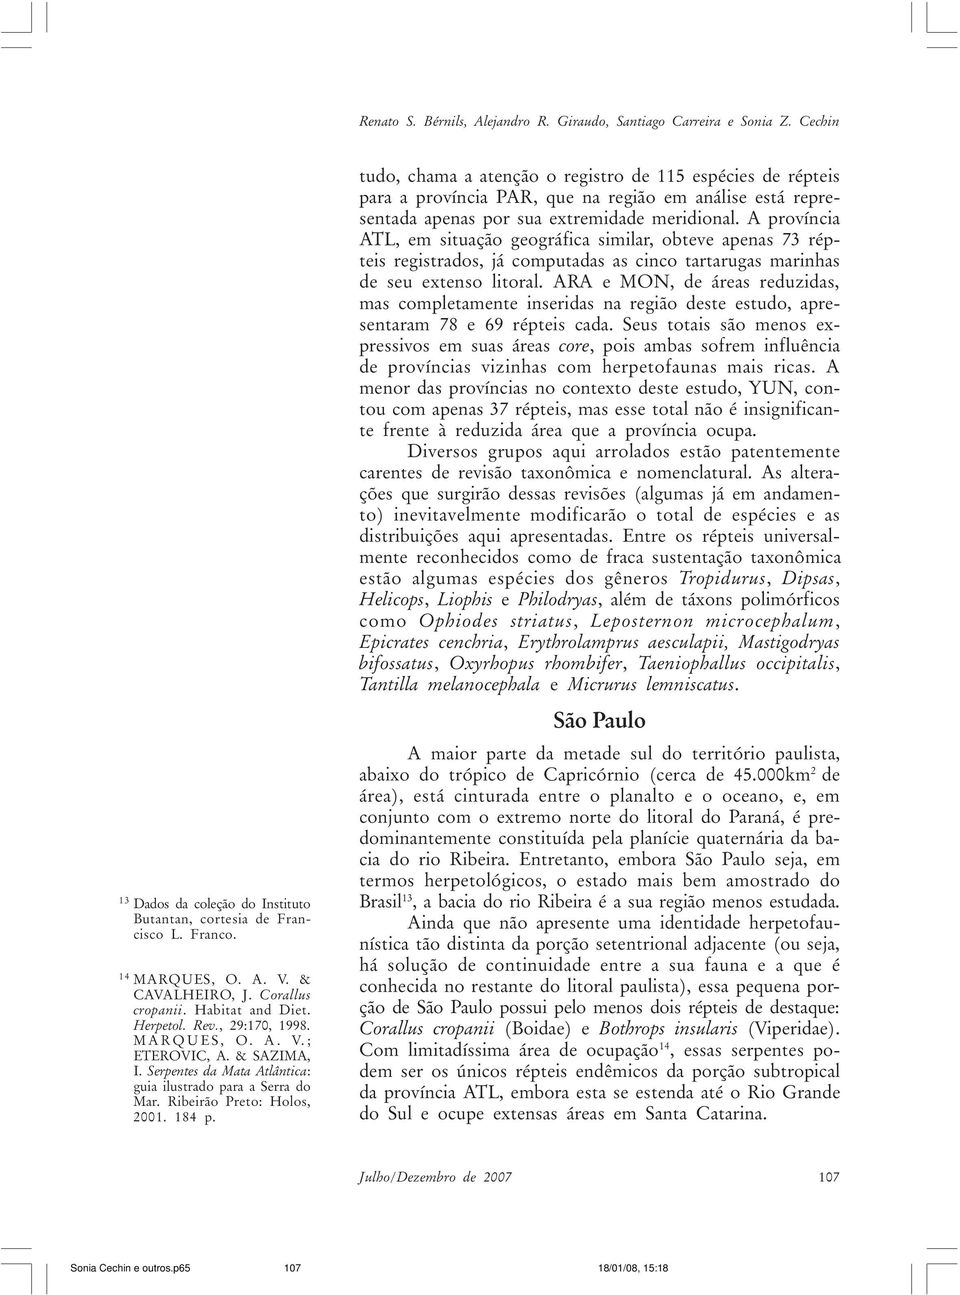 Ribeirão Preto: Holos, 2001. 184 p. tudo, chama a atenção o registro de 115 espécies de répteis para a província PAR, que na região em análise está representada apenas por sua extremidade meridional.